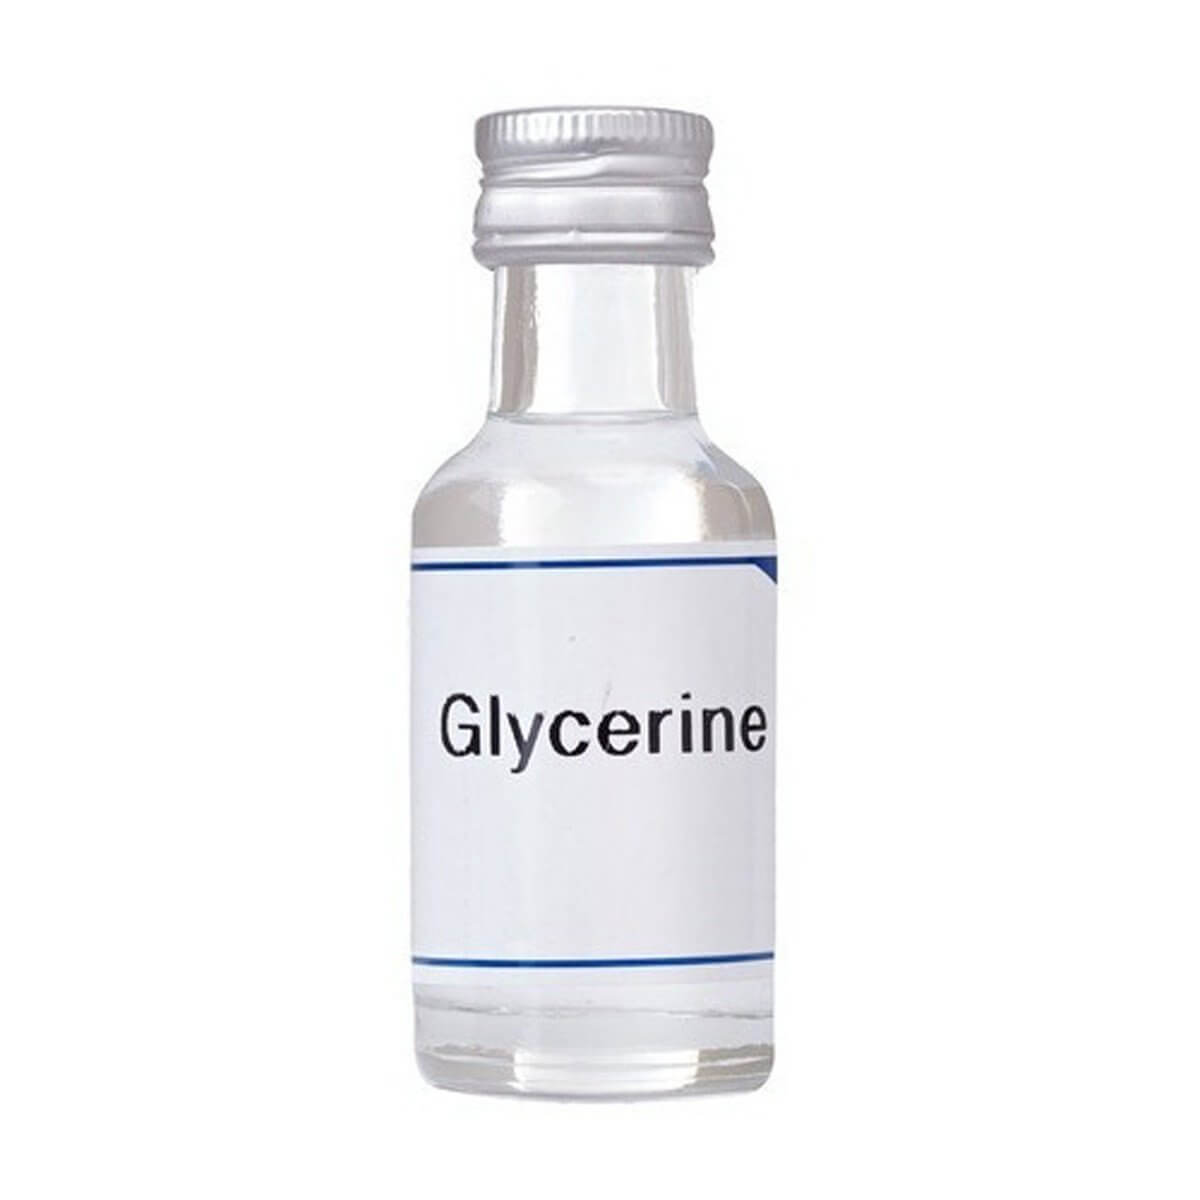 گلیسیرین و کاربرد ها - گلیسیرین مایع - گلیسیرین جامد - فواید گلیسیرین برای  پوست